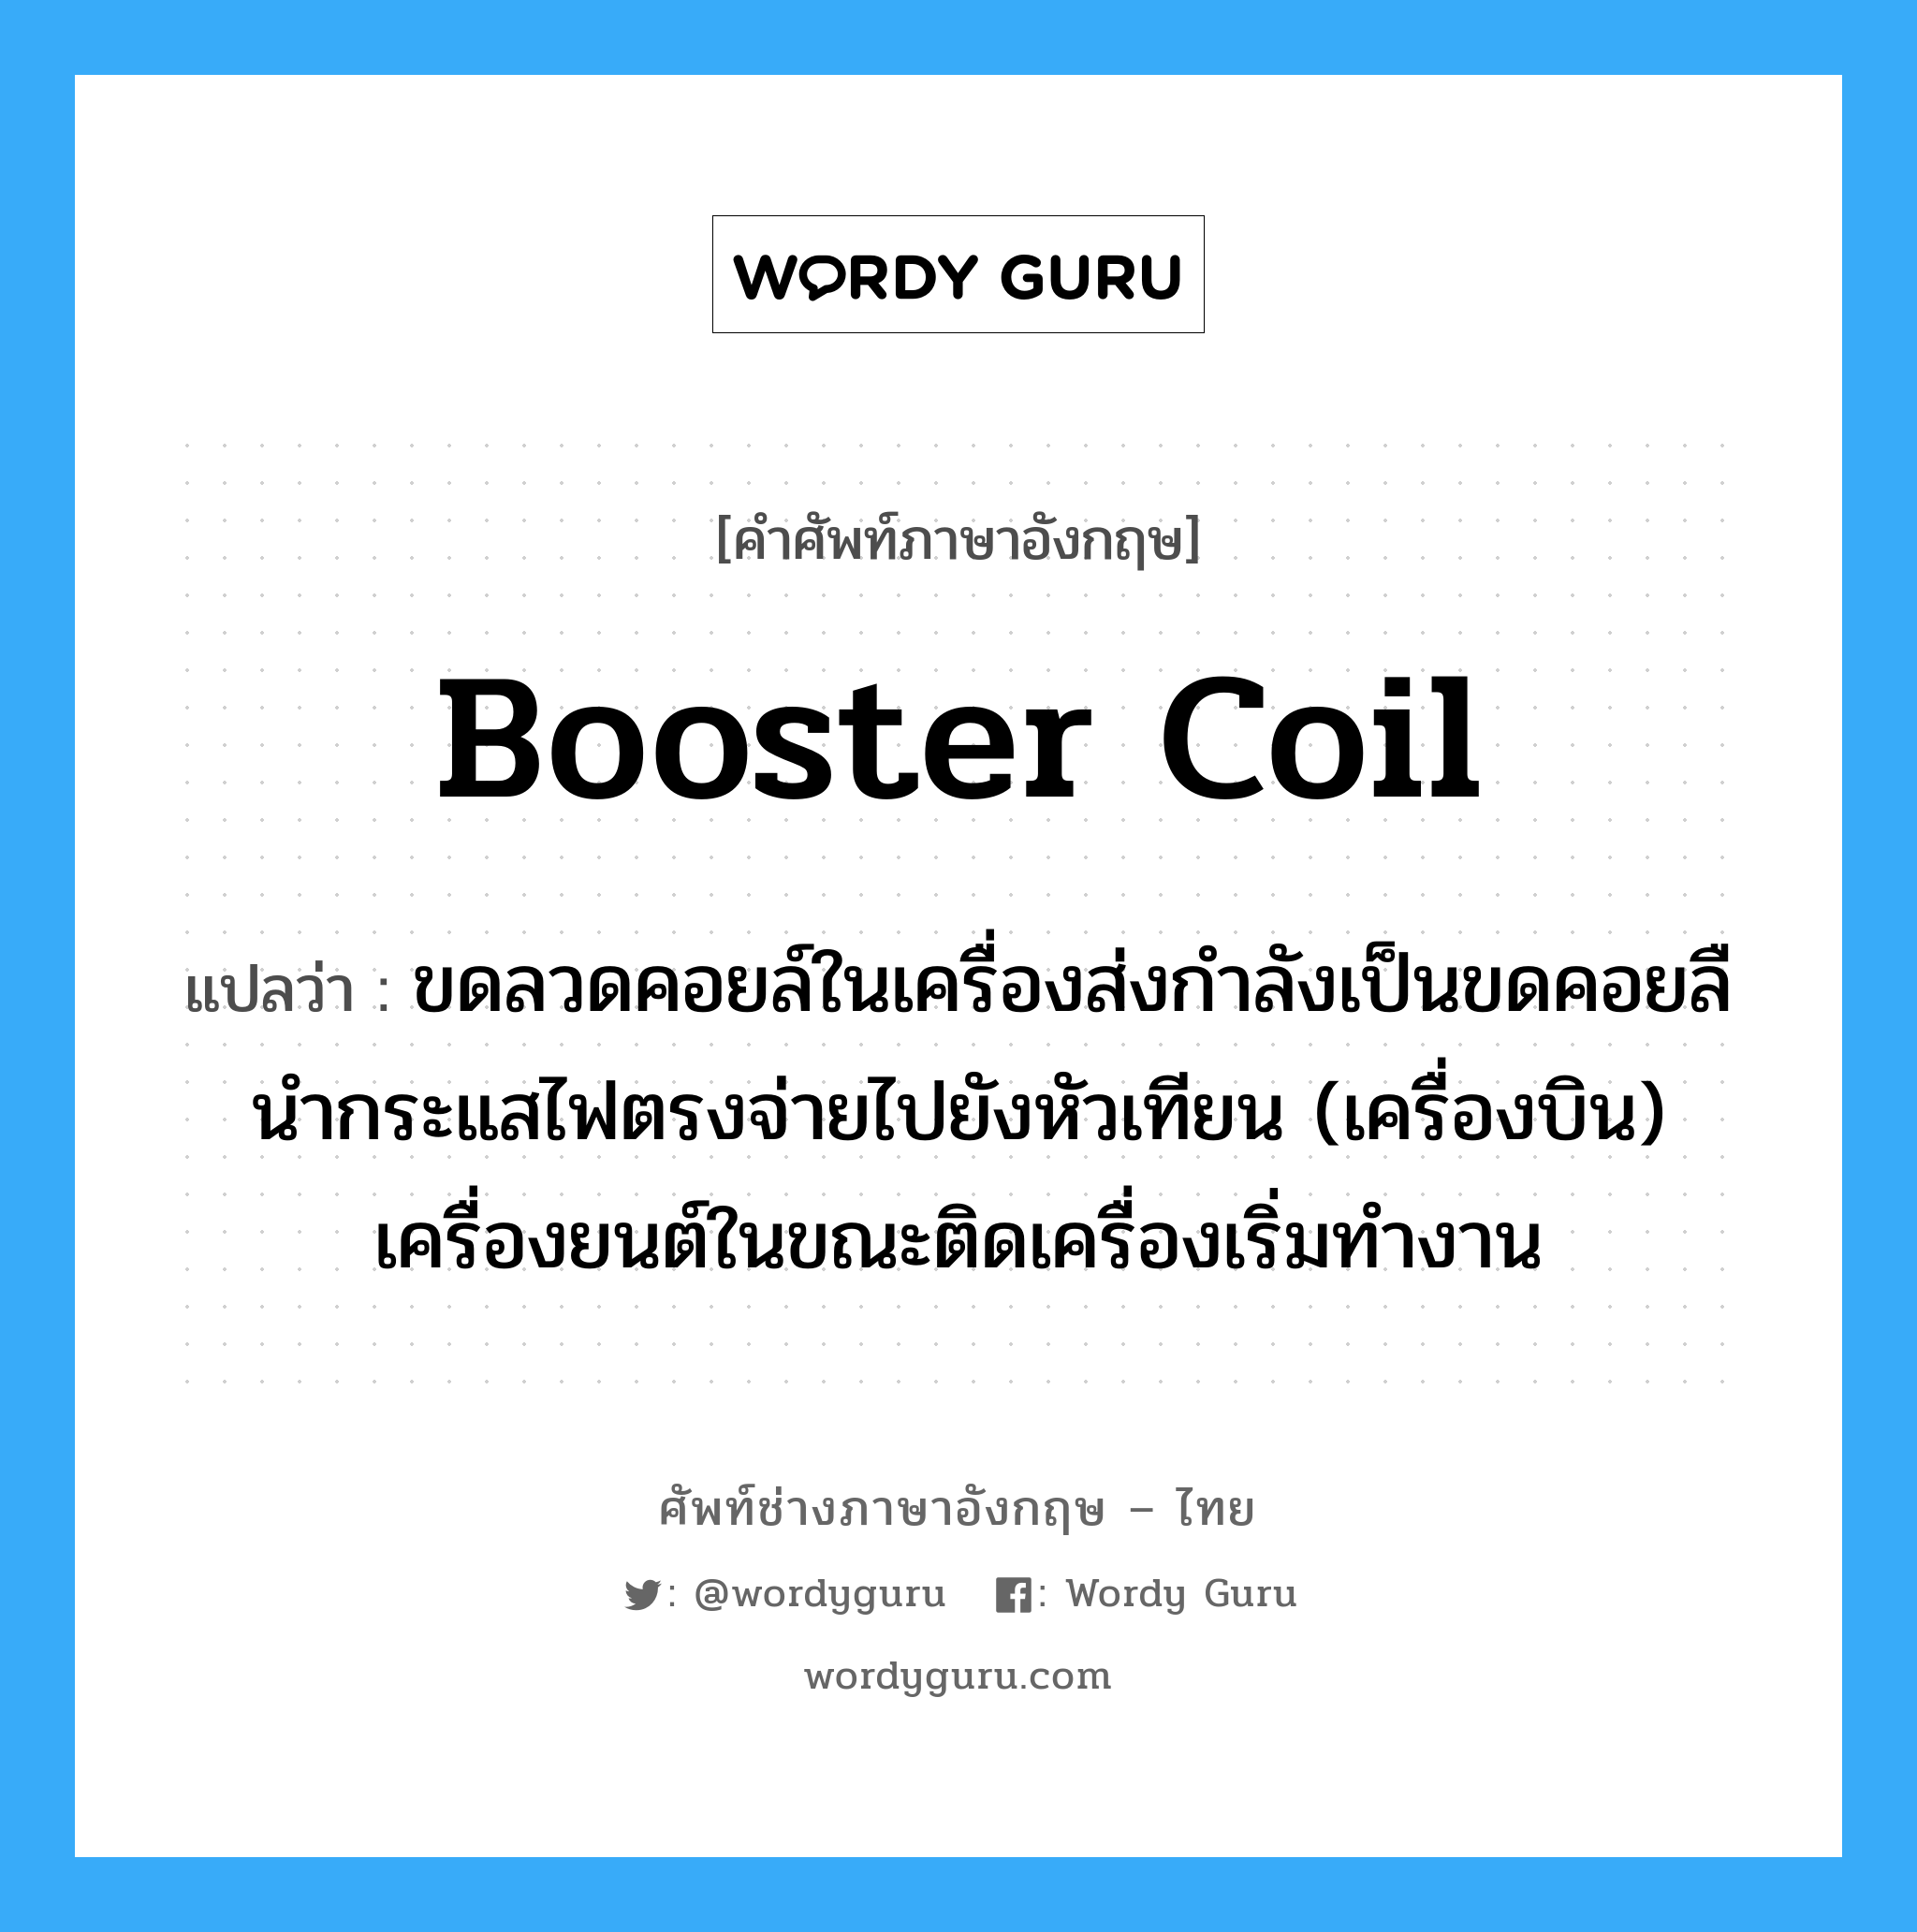 booster coil แปลว่า?, คำศัพท์ช่างภาษาอังกฤษ - ไทย booster coil คำศัพท์ภาษาอังกฤษ booster coil แปลว่า ขดลวดคอยล์ในเครื่องส่งกำลังเป็นขดคอยลืนำกระแสไฟตรงจ่ายไปยังหัวเทียน (เครื่องบิน) เครื่องยนต์ในขณะติดเครื่องเริ่มทำงาน